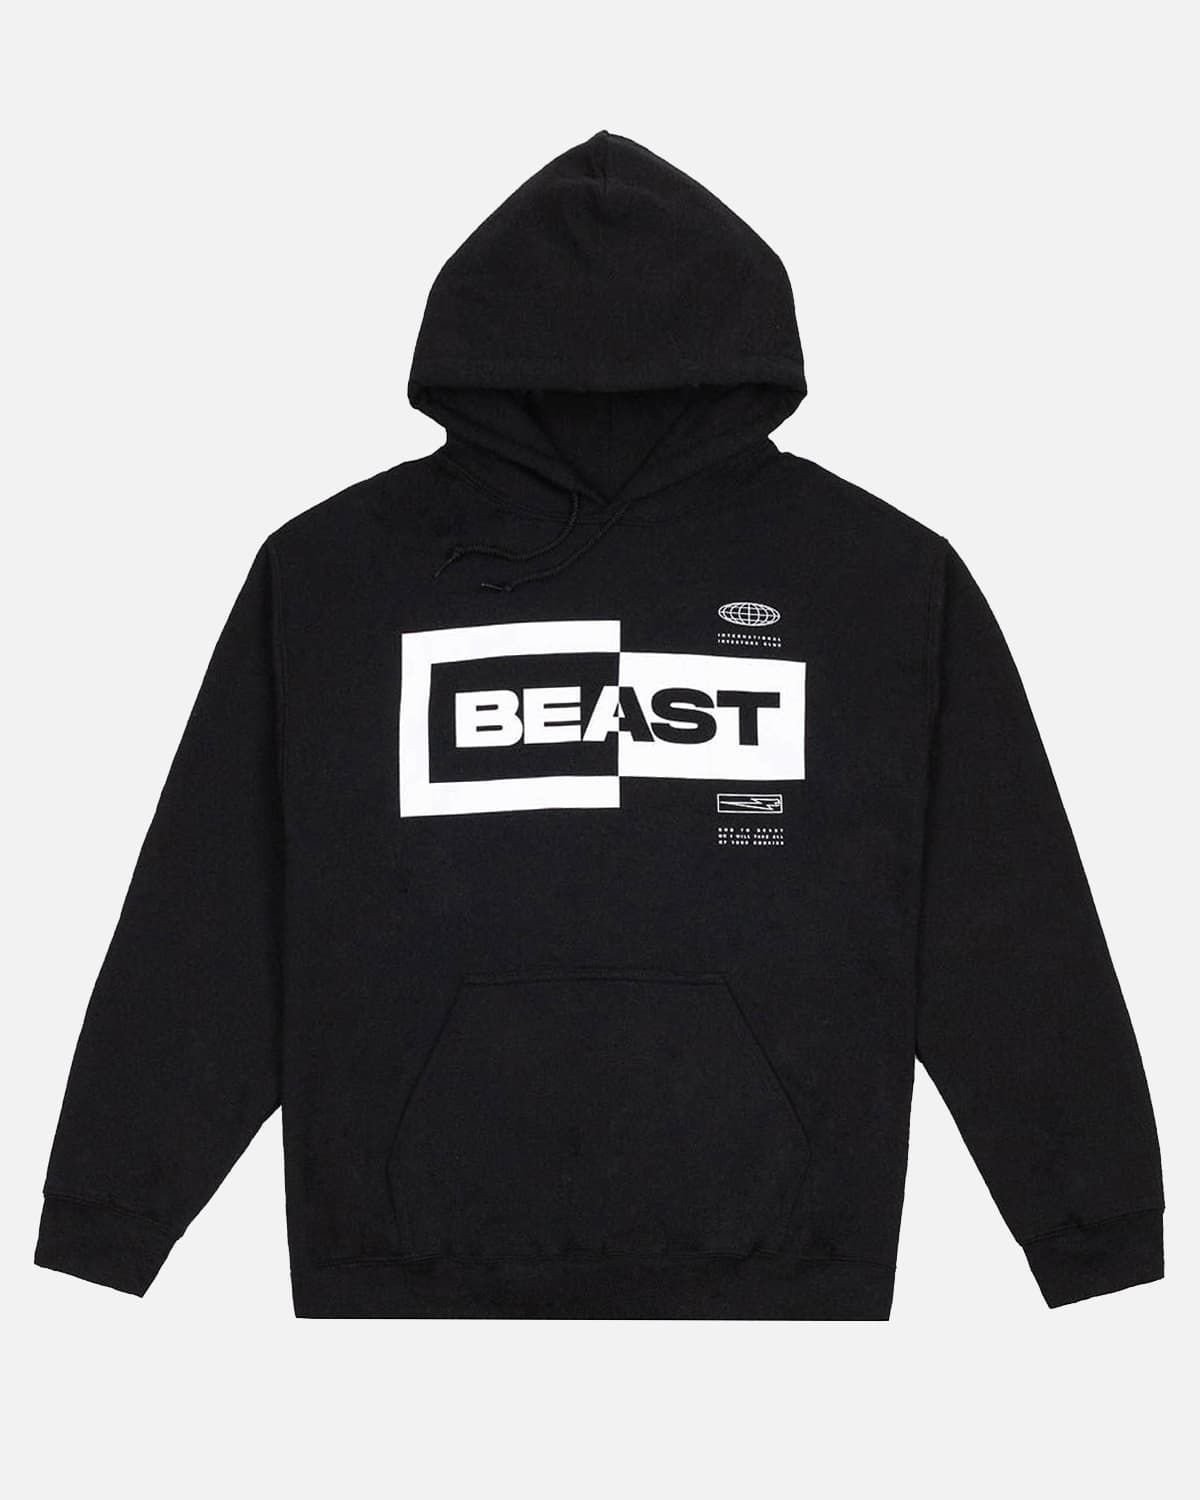 Mr Beast Hoodies - Beast Inverted Box Logo Pullover Hoodie | Mr Beast Shop